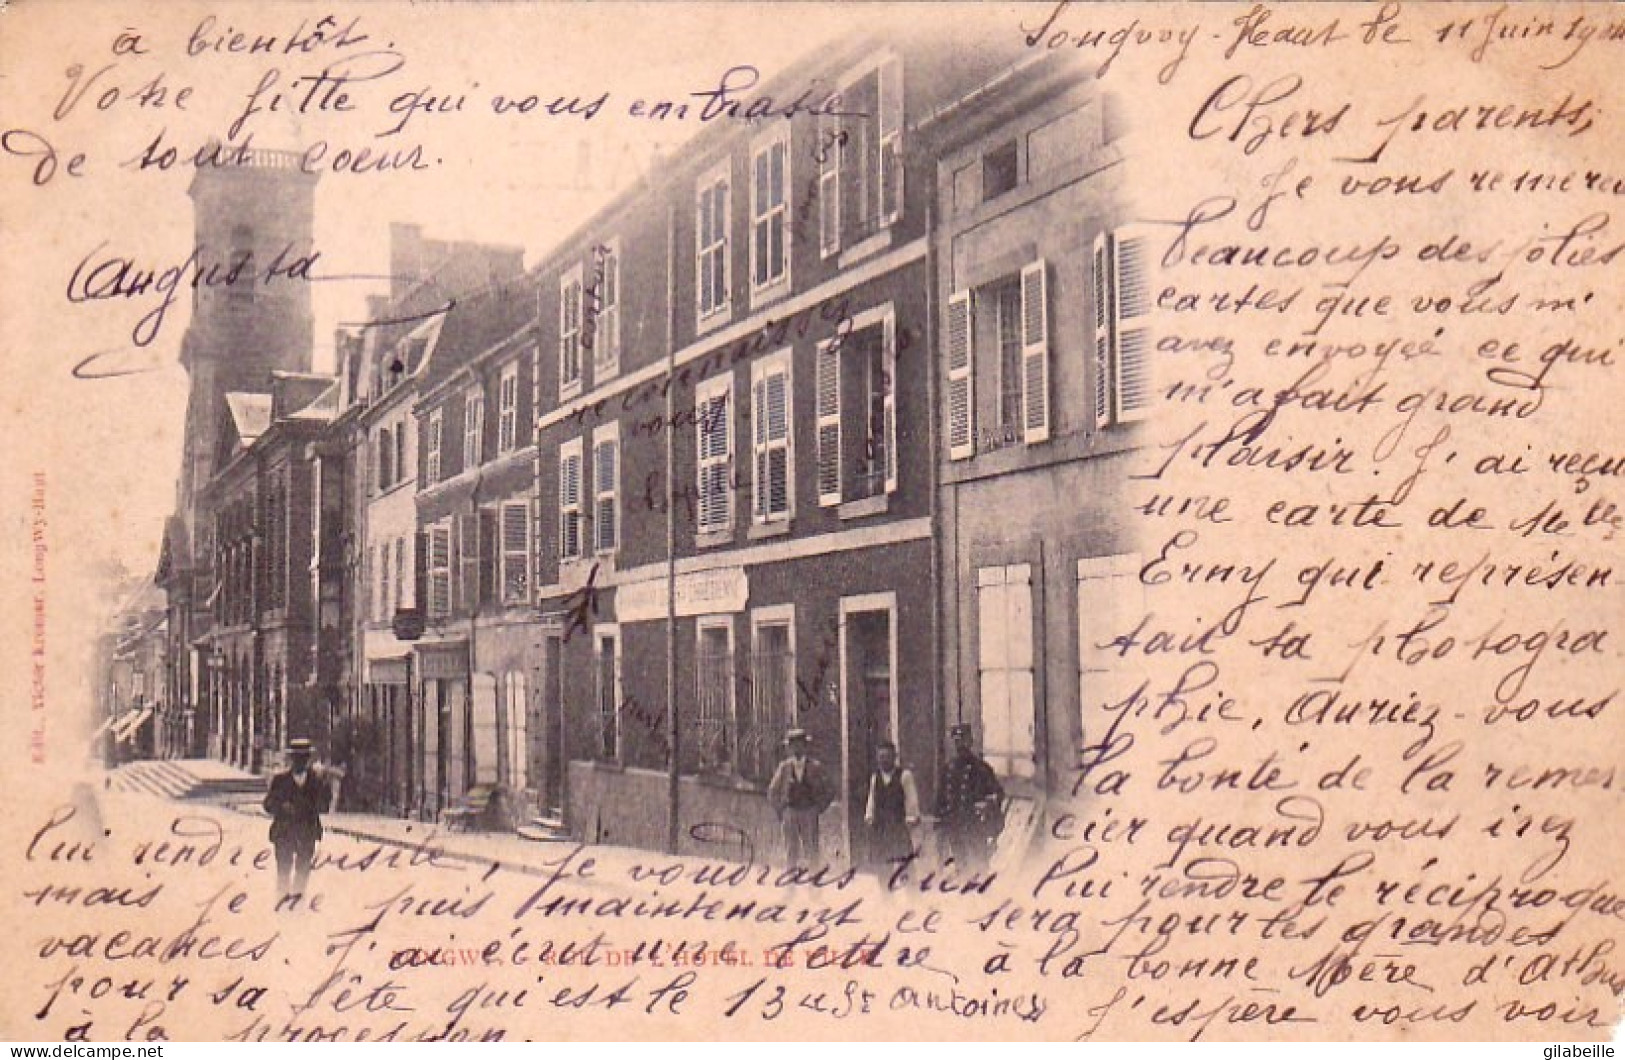 LONGWY - Rue De L'hotel De Ville - Carte Precurseur 1904 - Longwy